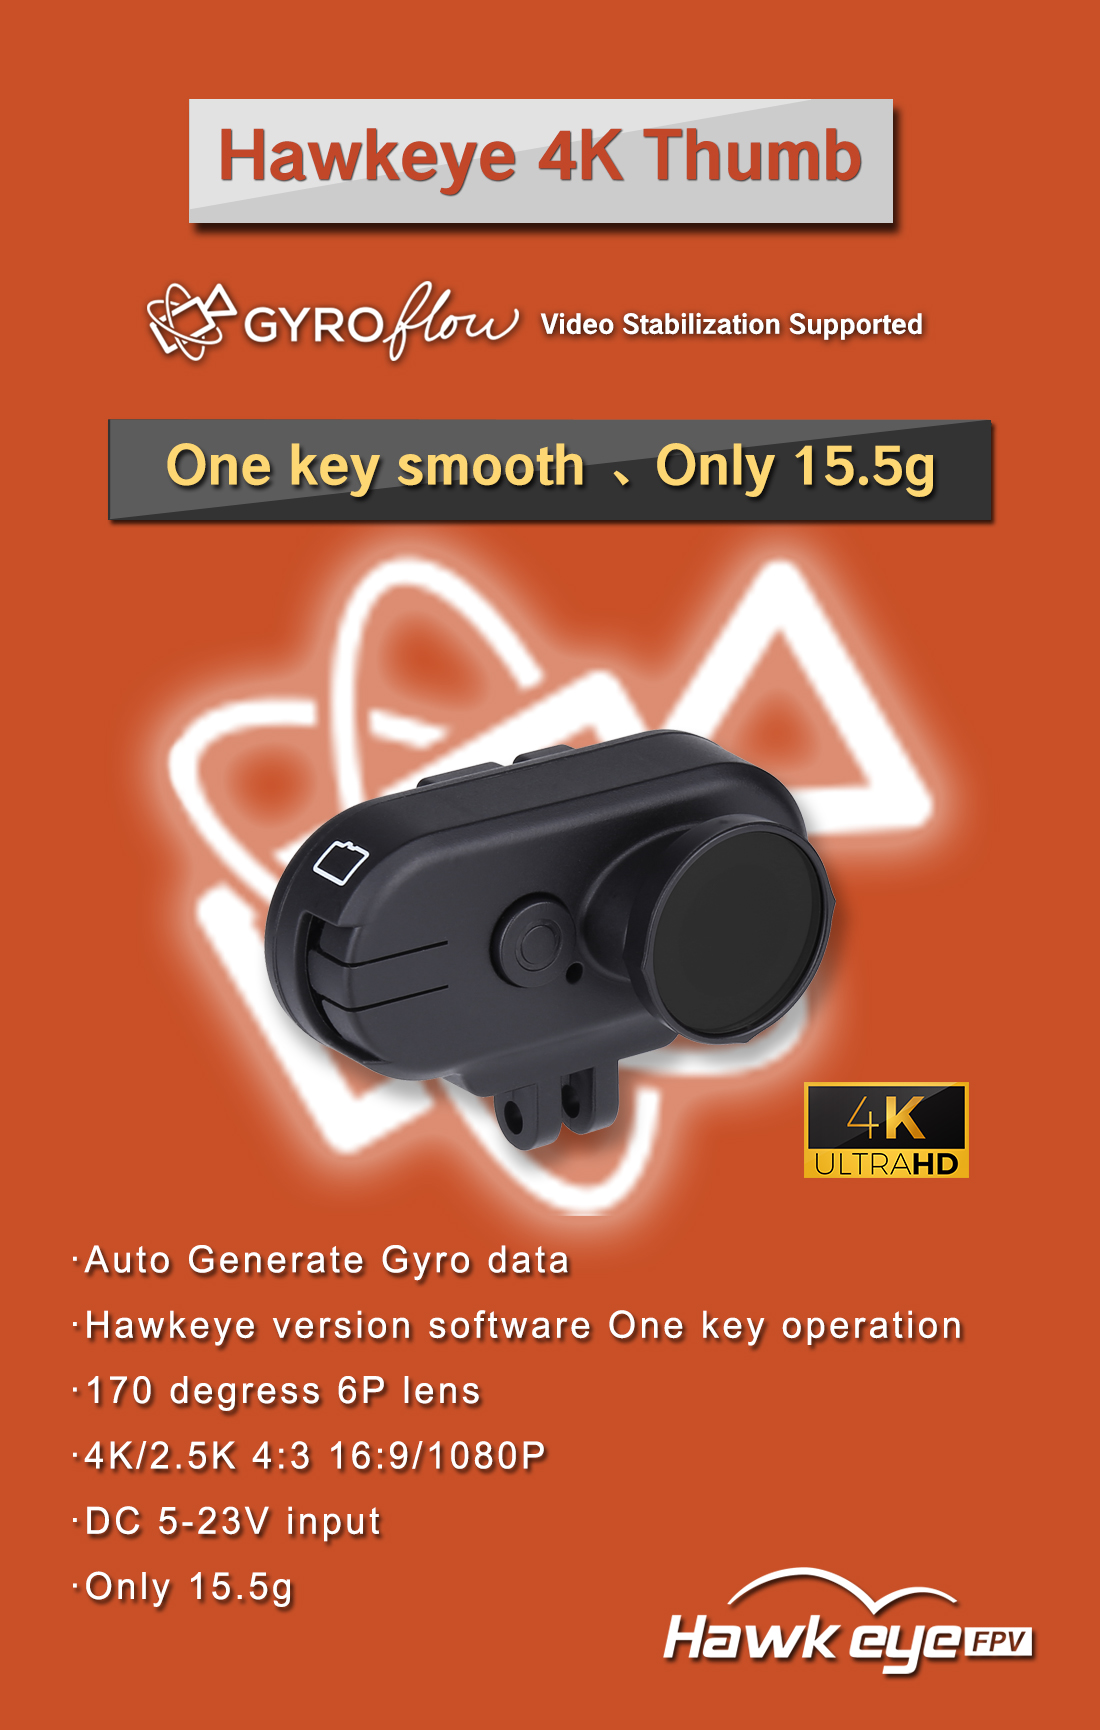 Get Hawkeye Thumb 4K HD FPV Camera at 60€ with Coupon on BANGGOOD